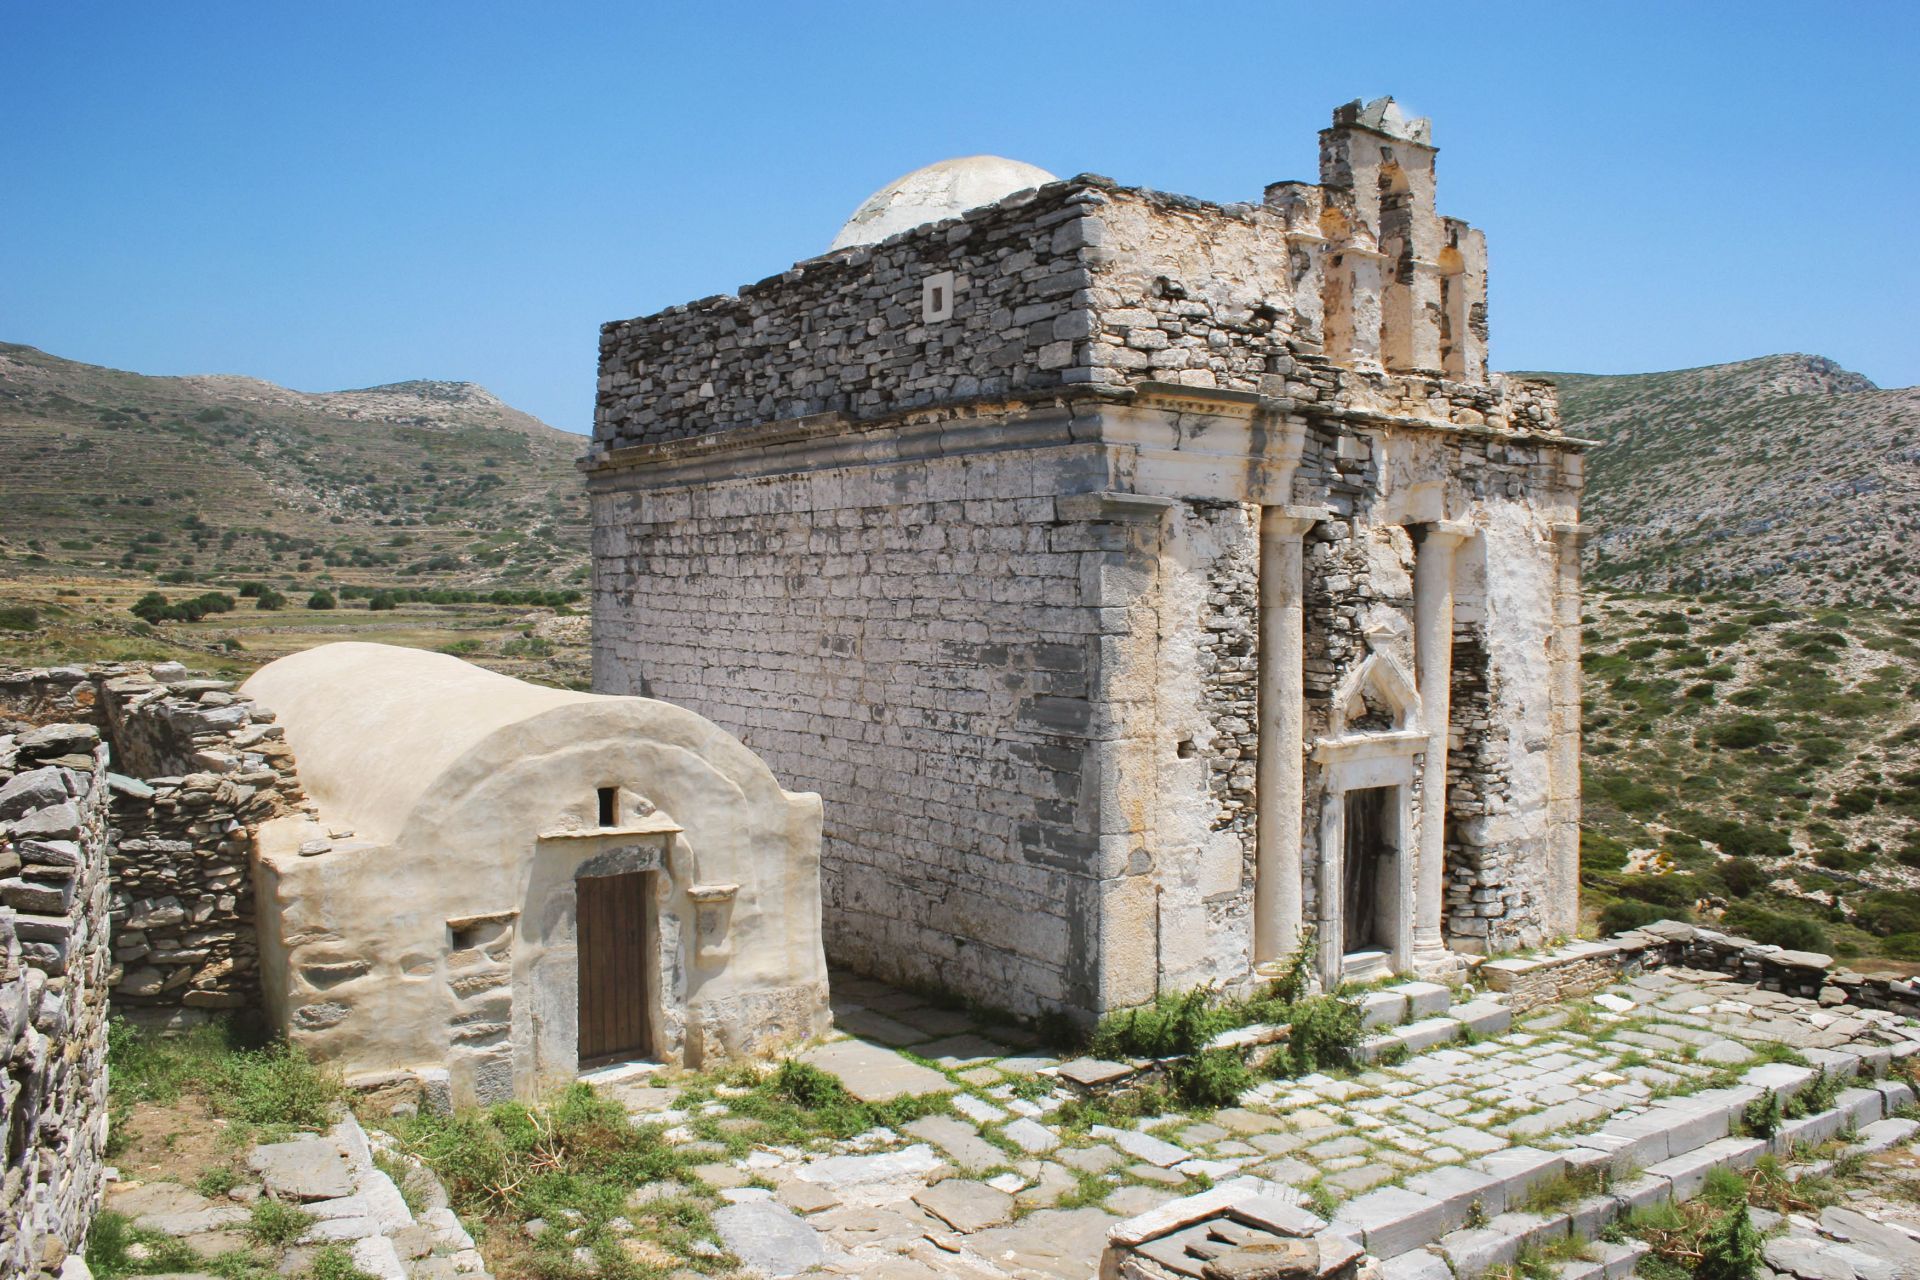 Episkopi Monastery